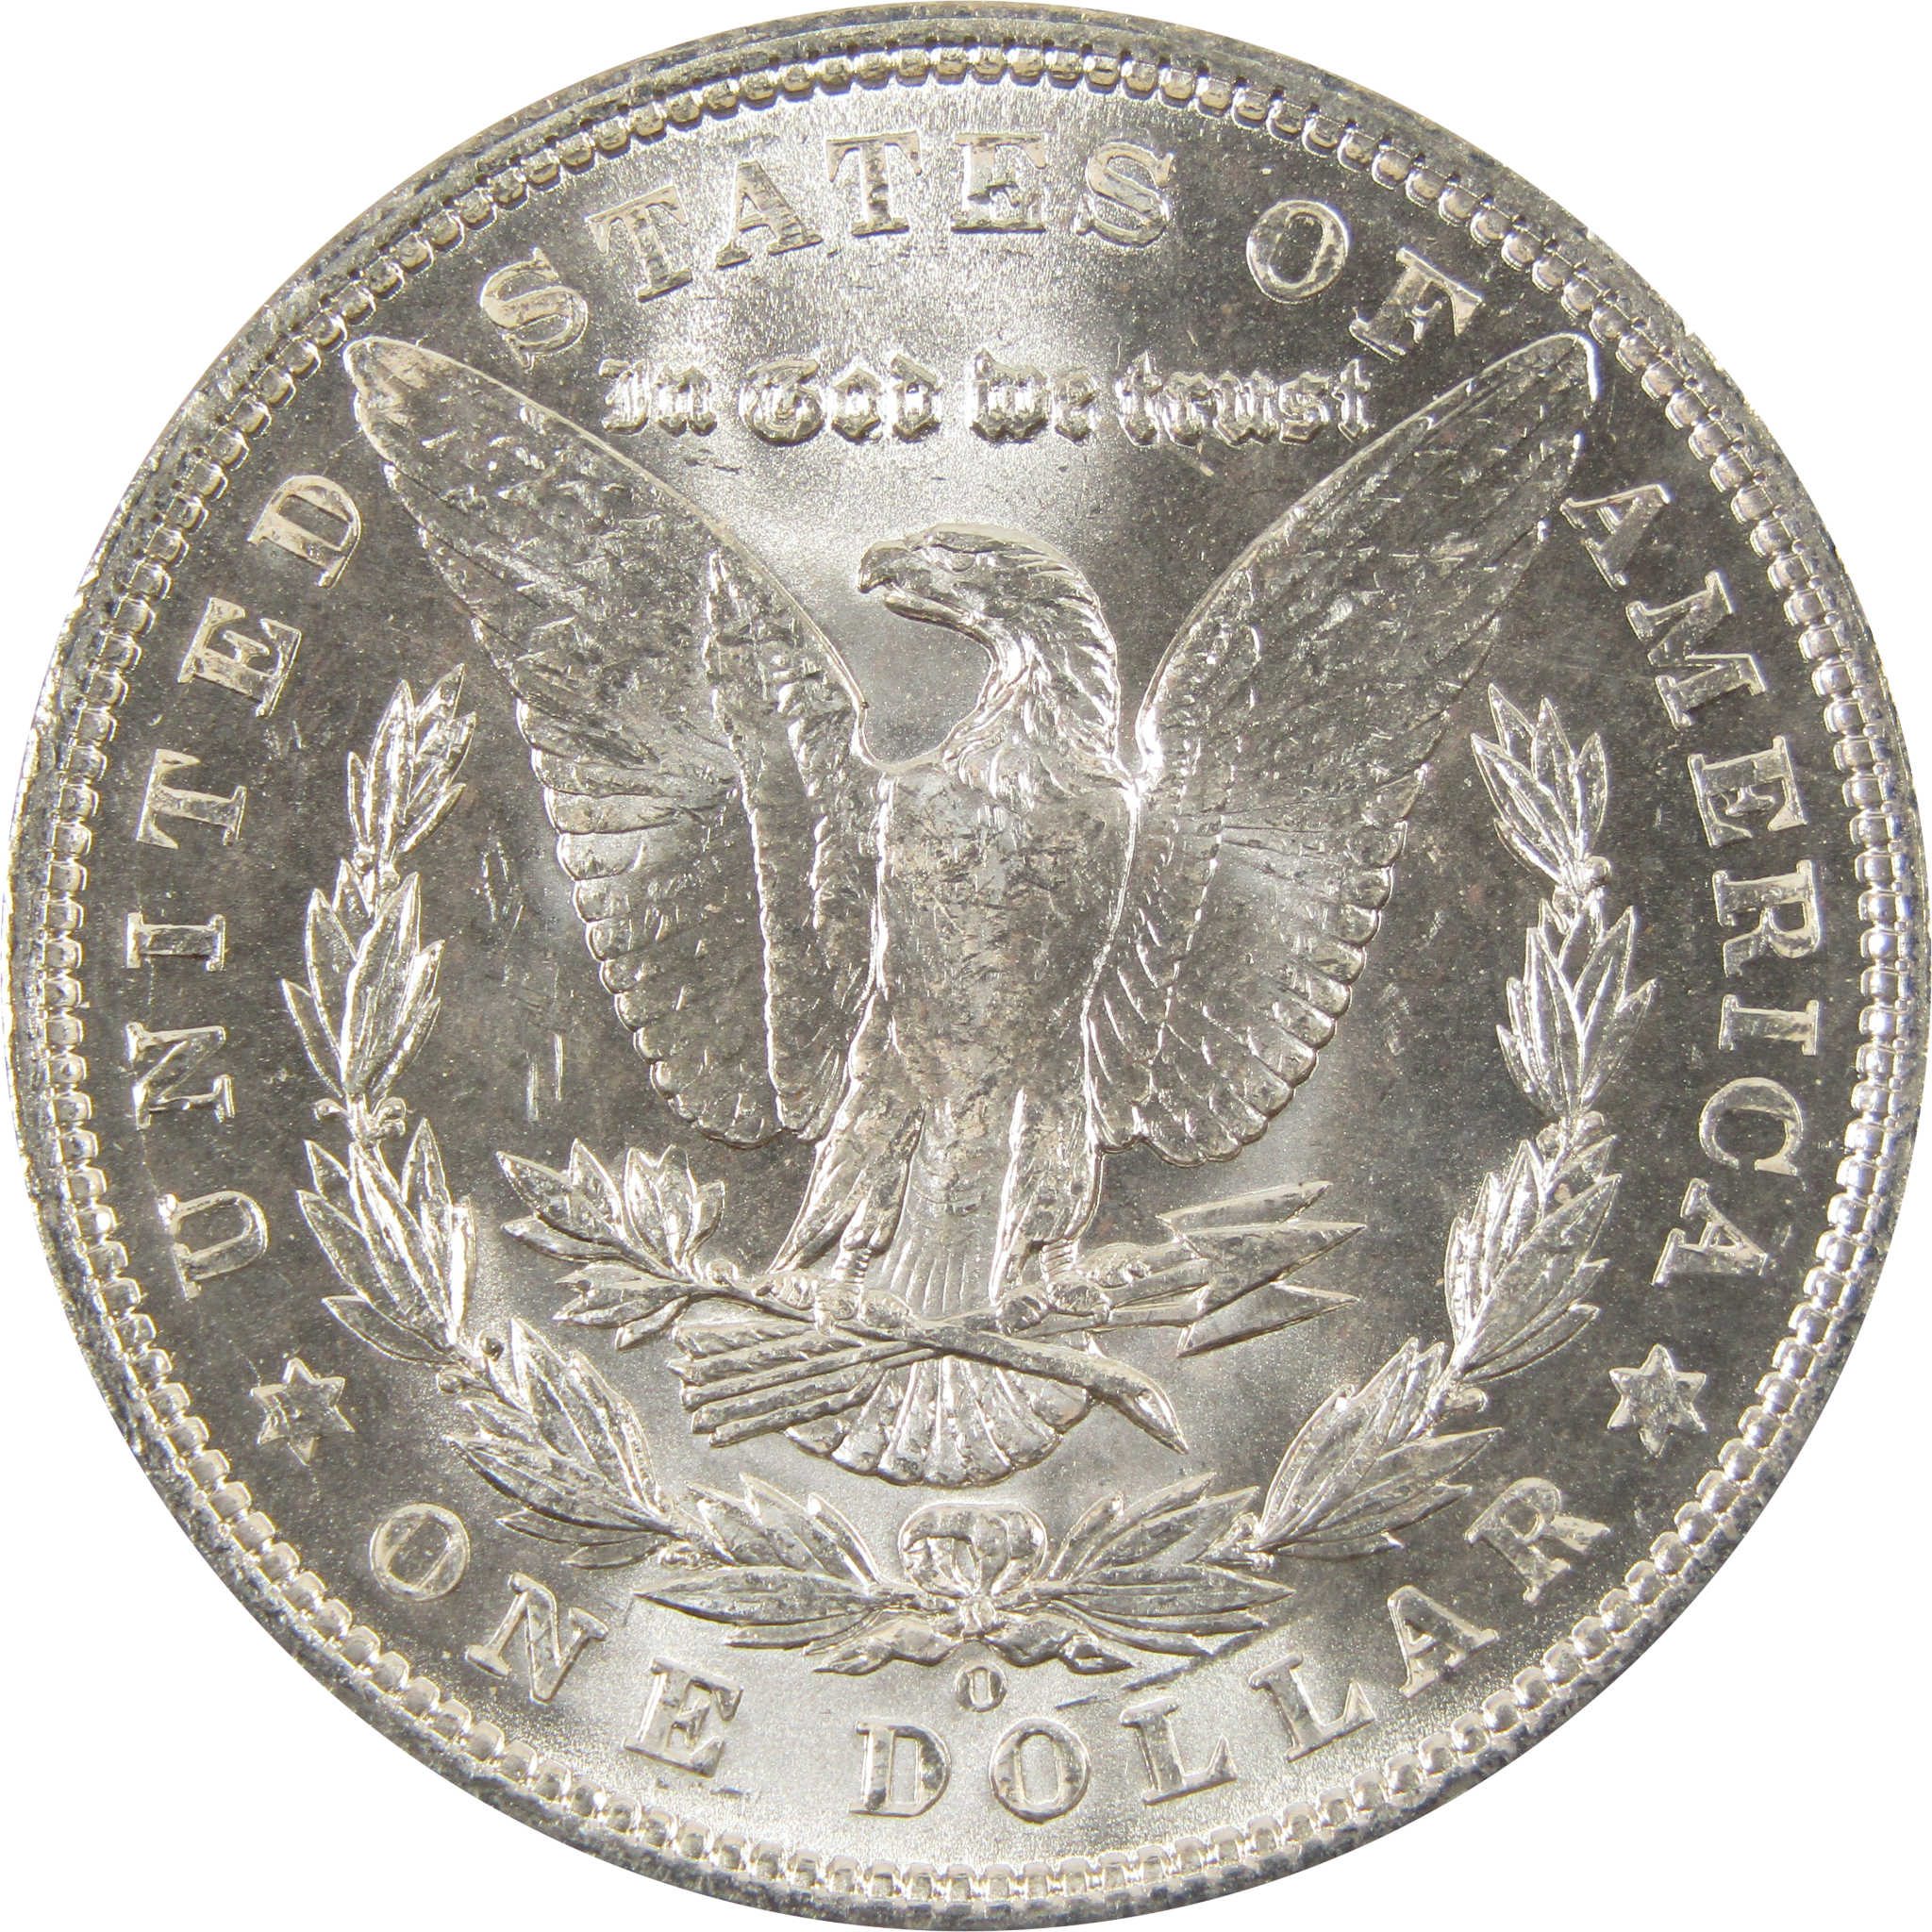 1903 O Morgan Dollar BU Choice Uncirculated 90% Silver $1 SKU:I7514 - Morgan coin - Morgan silver dollar - Morgan silver dollar for sale - Profile Coins &amp; Collectibles